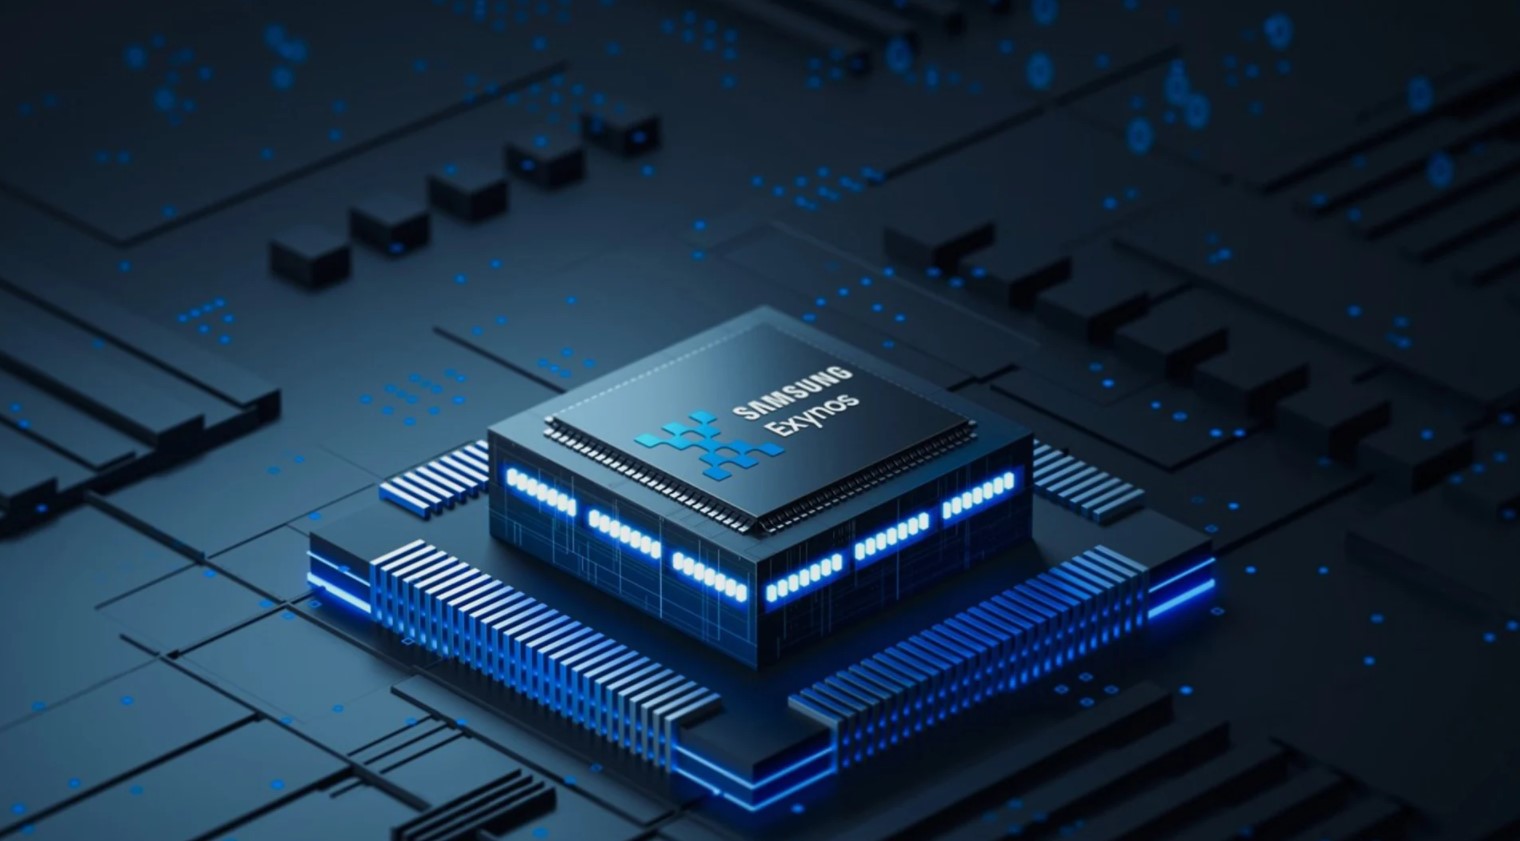 Το επόμενης γενιάς Exynos SoC με AMD GPU δείχνει σημαντικά καλύτερες επιδόσεις στα πρώτα benchmarks σε σύγκριση με το Apple A14